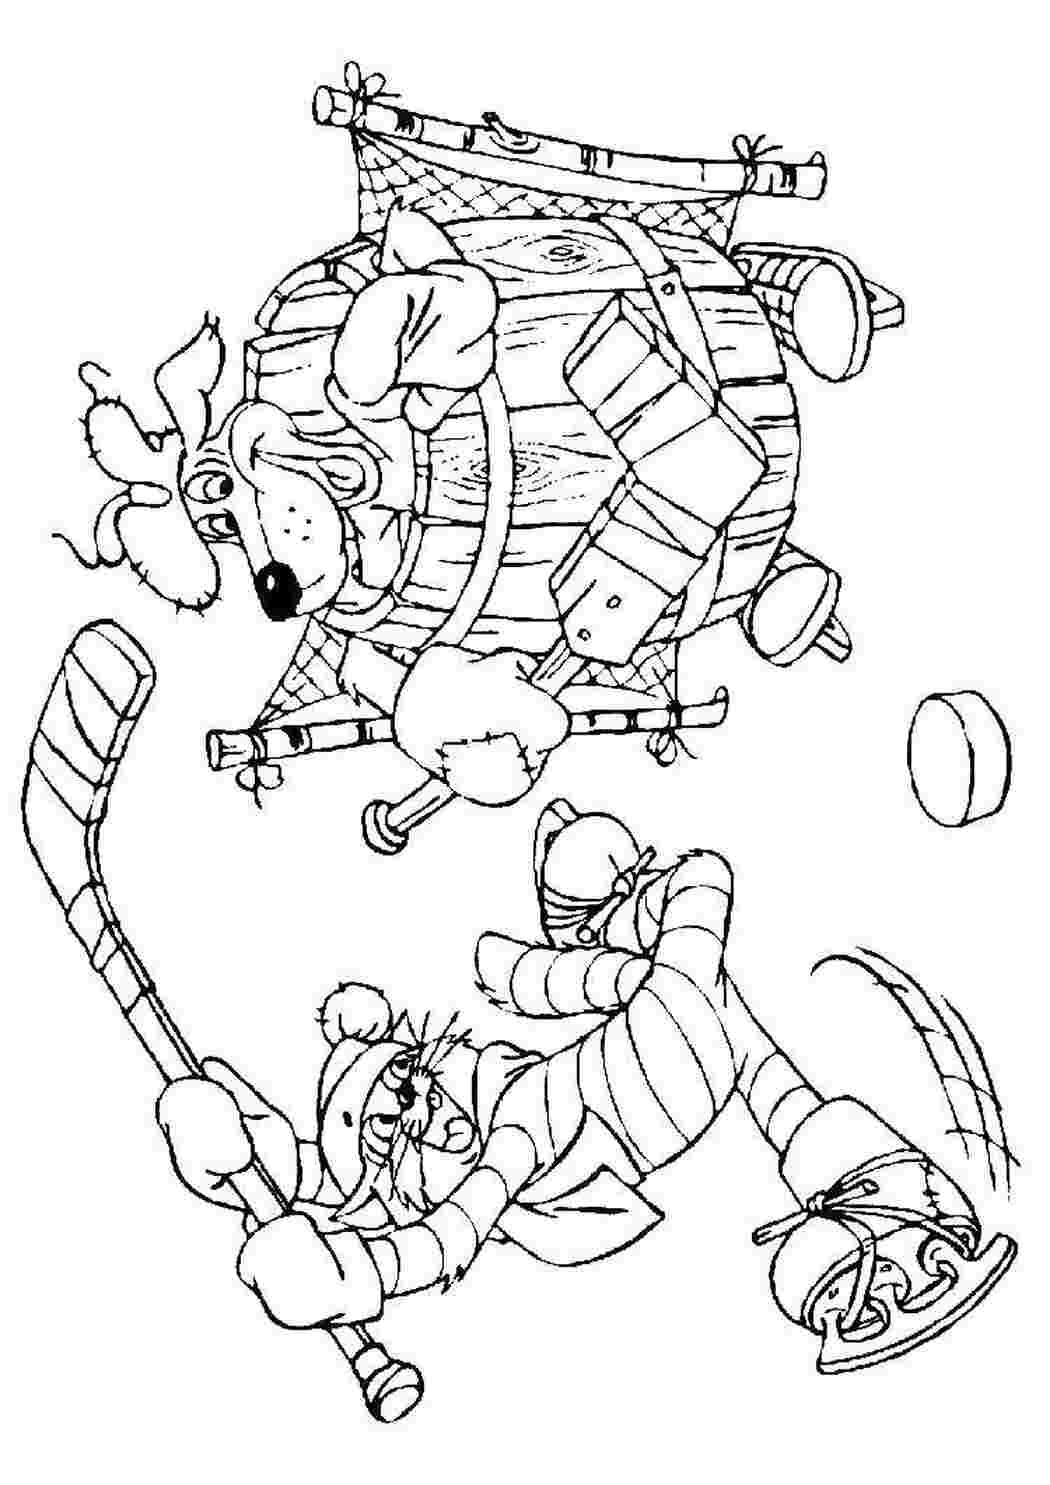 Раскраски Кот матроскин и шарик из простоквашино играют в хоккей Советские раскраски Персонаж из мультфильма, "Простоквашино"